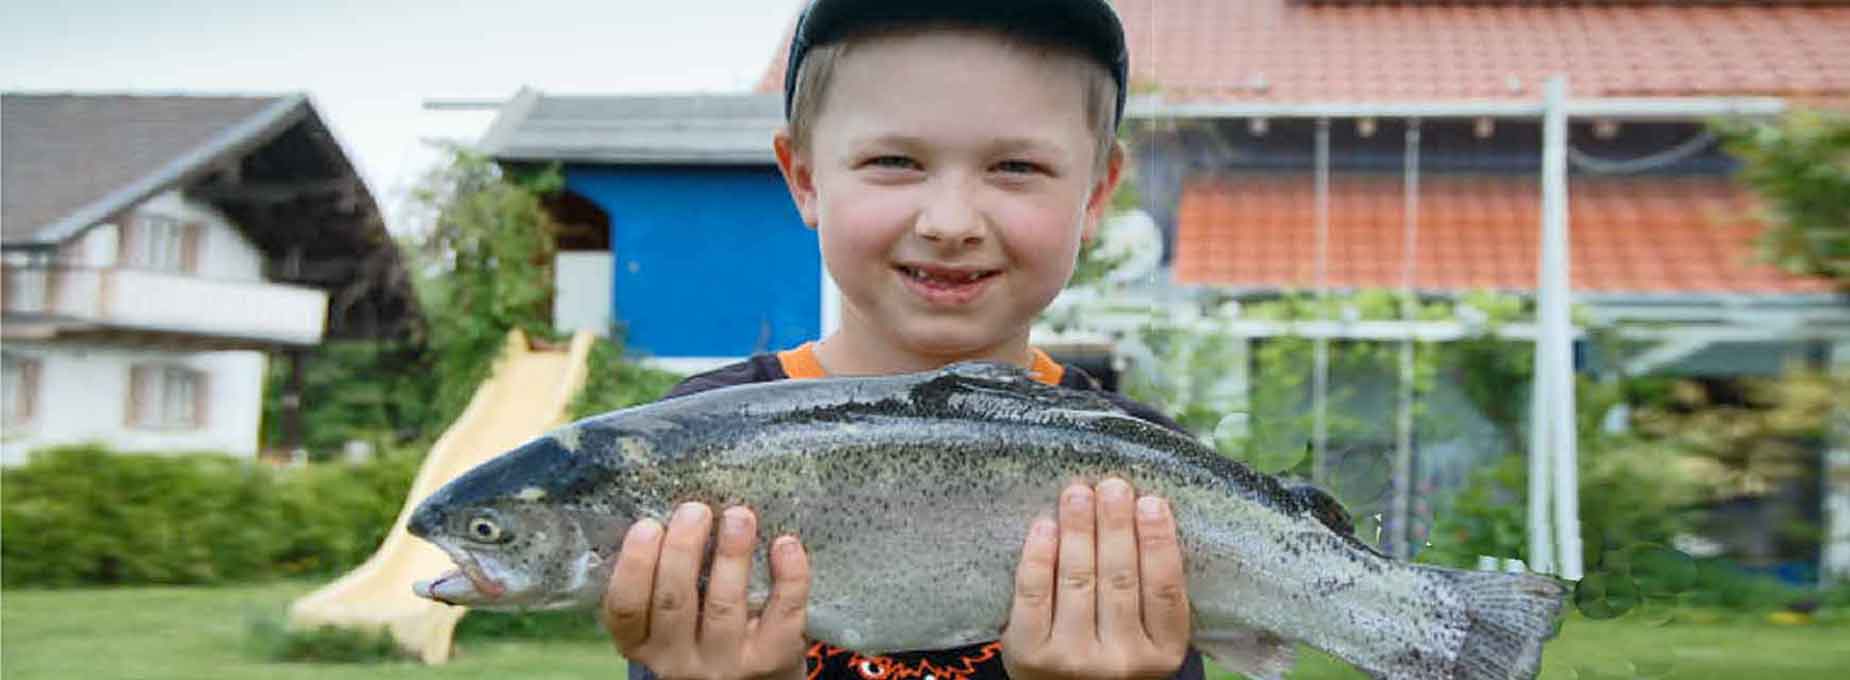 Fischerjugend Kreisfischereiverein Rosenheim